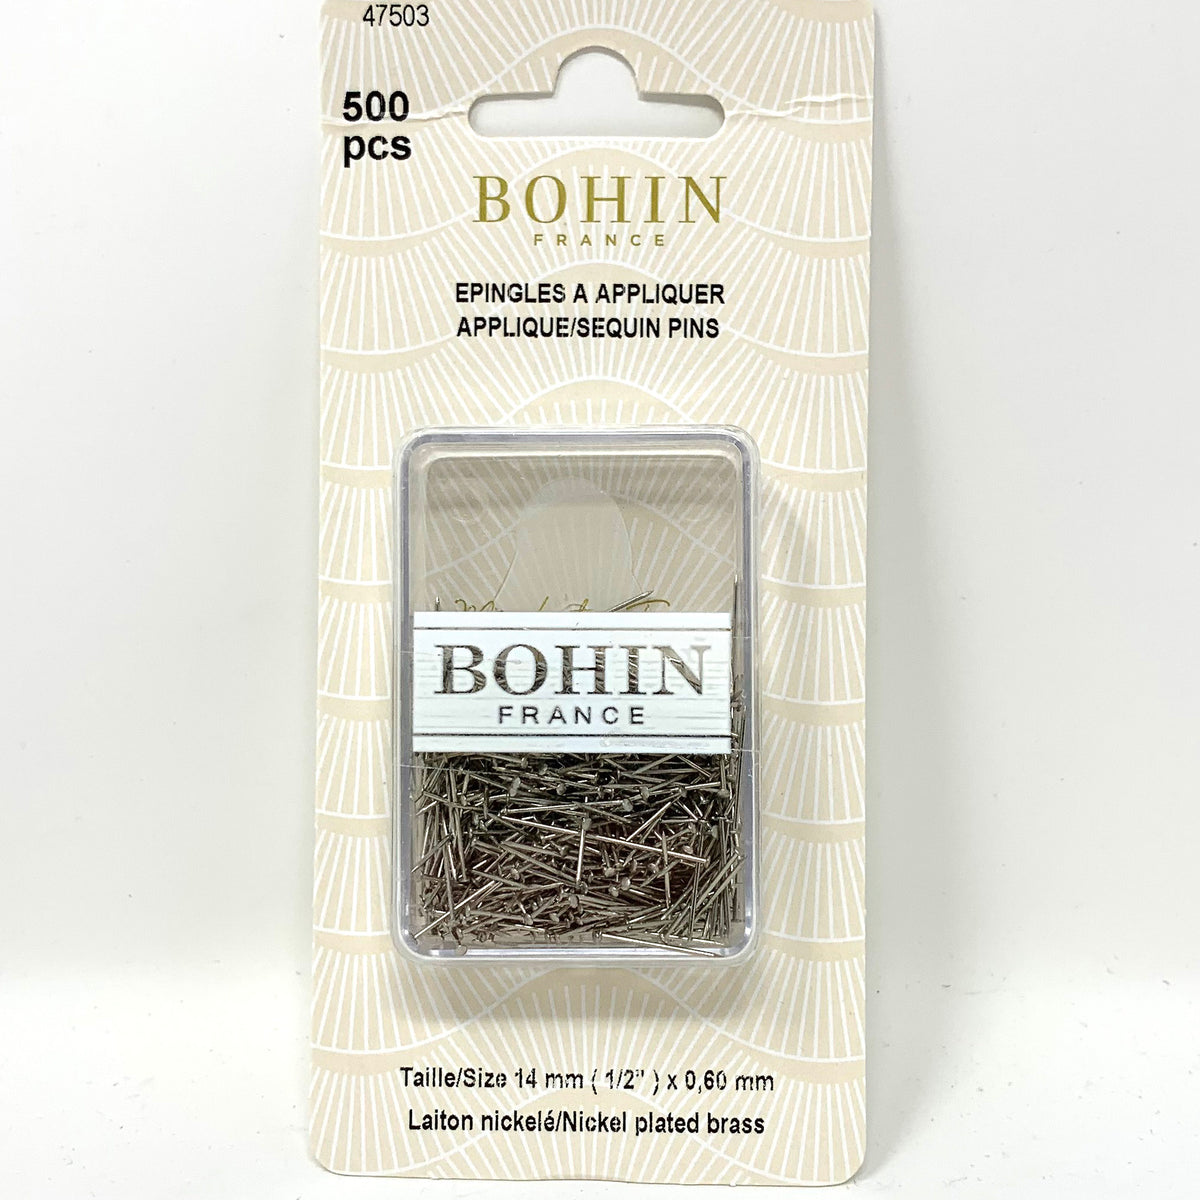 Brass Applique Sequin Pins by Bohin - 500 pins – Marguerite's Stitchery